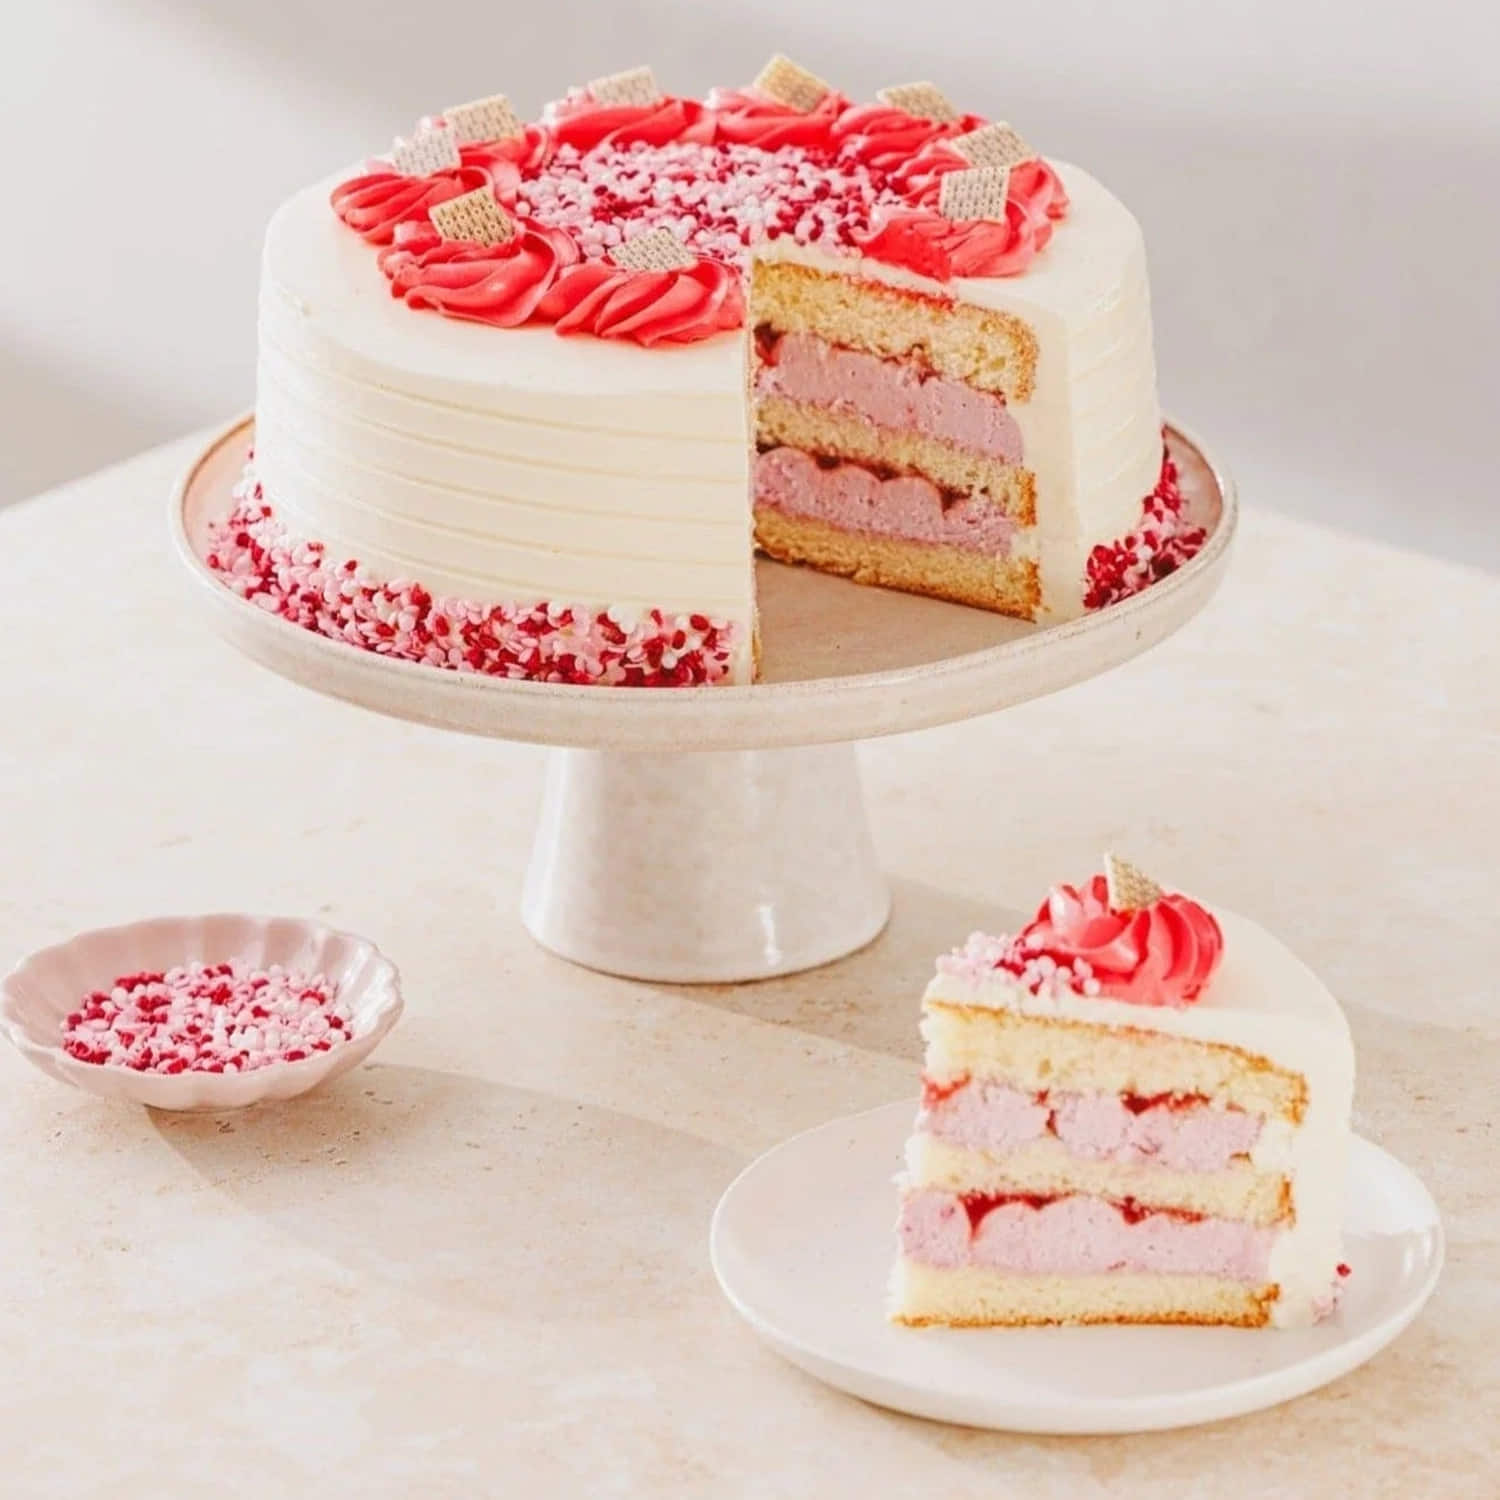 Best Danish Dream Cake Recipe - How to Make Danish Dream Cake